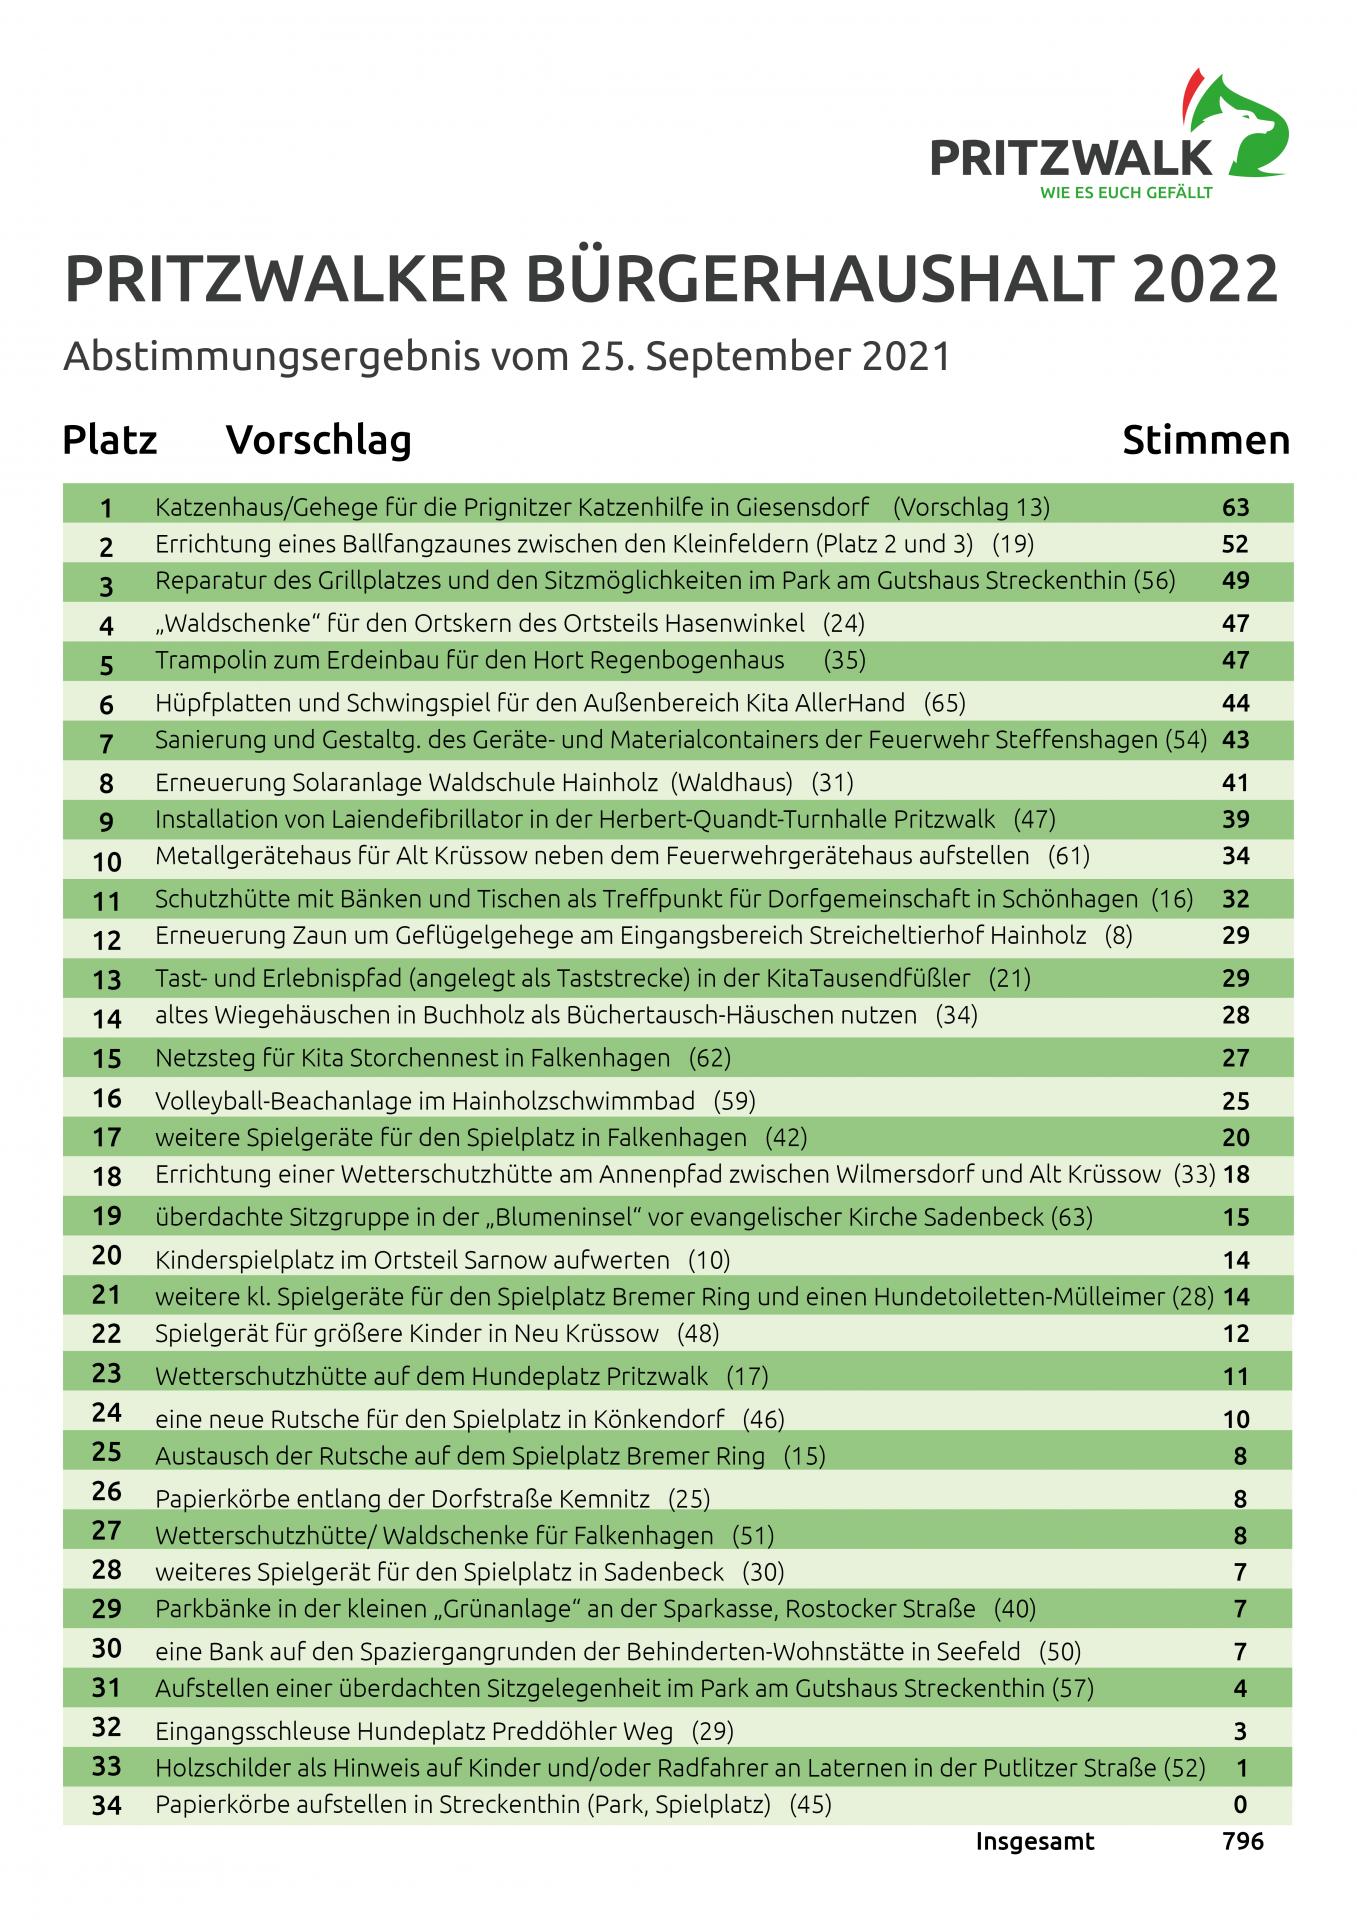 Das Ergebnis der Abstimmung für den Pritzwalker Bürgerhaushalt 2022.